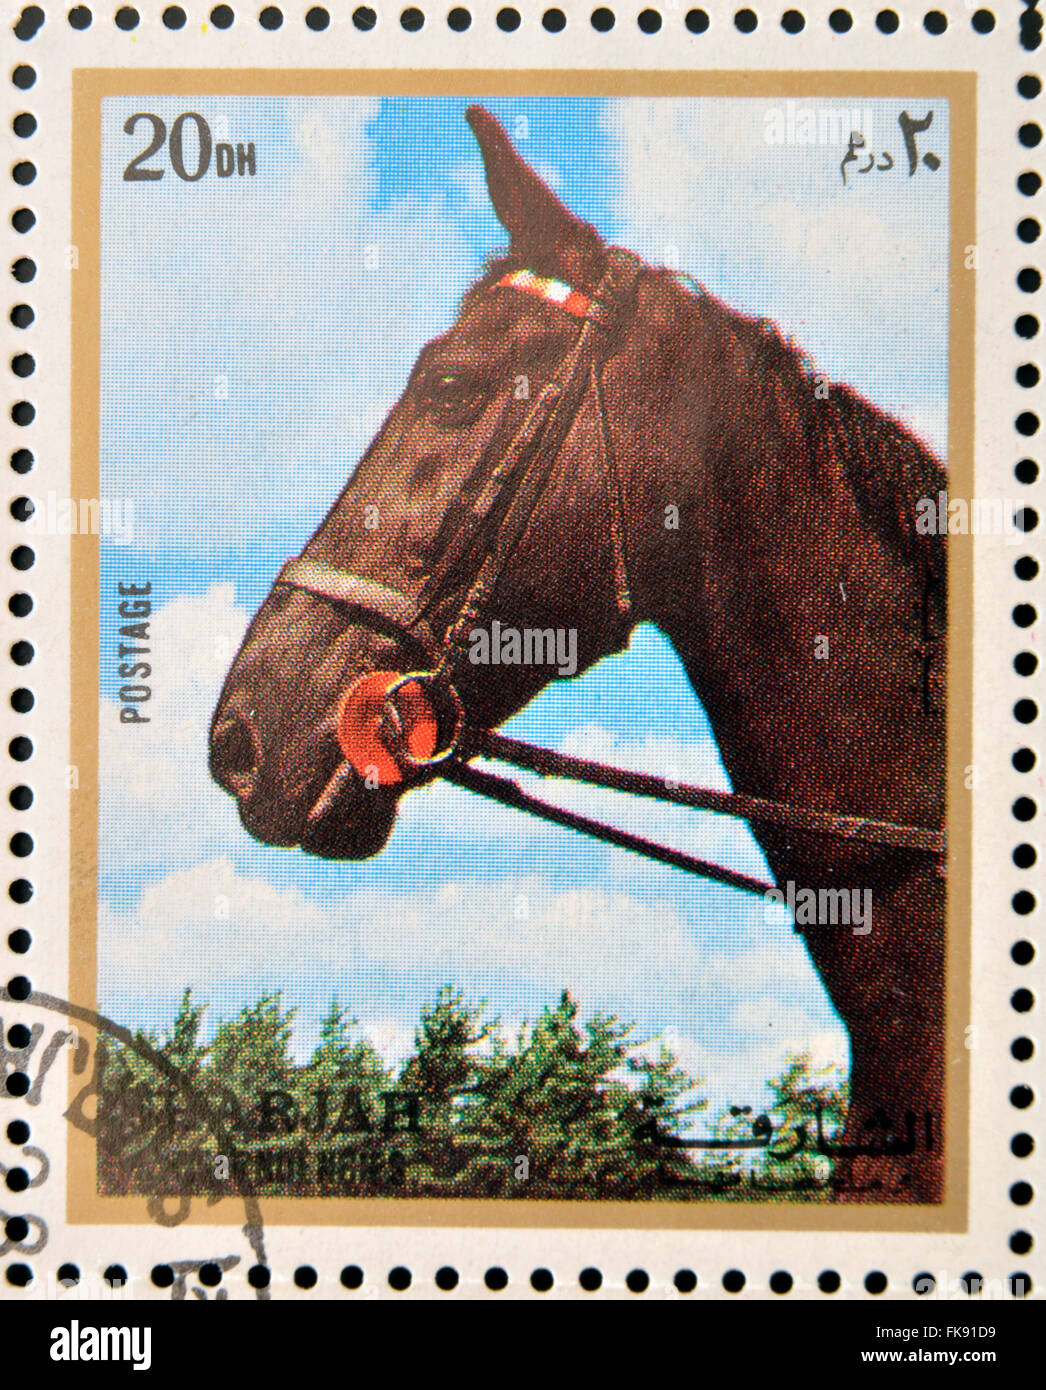 Emirato di Sharjah - circa 1972: francobolli stampati in Emirato di Sharjah mostra immagine del cavallo (Equus caballus ferus) Foto Stock